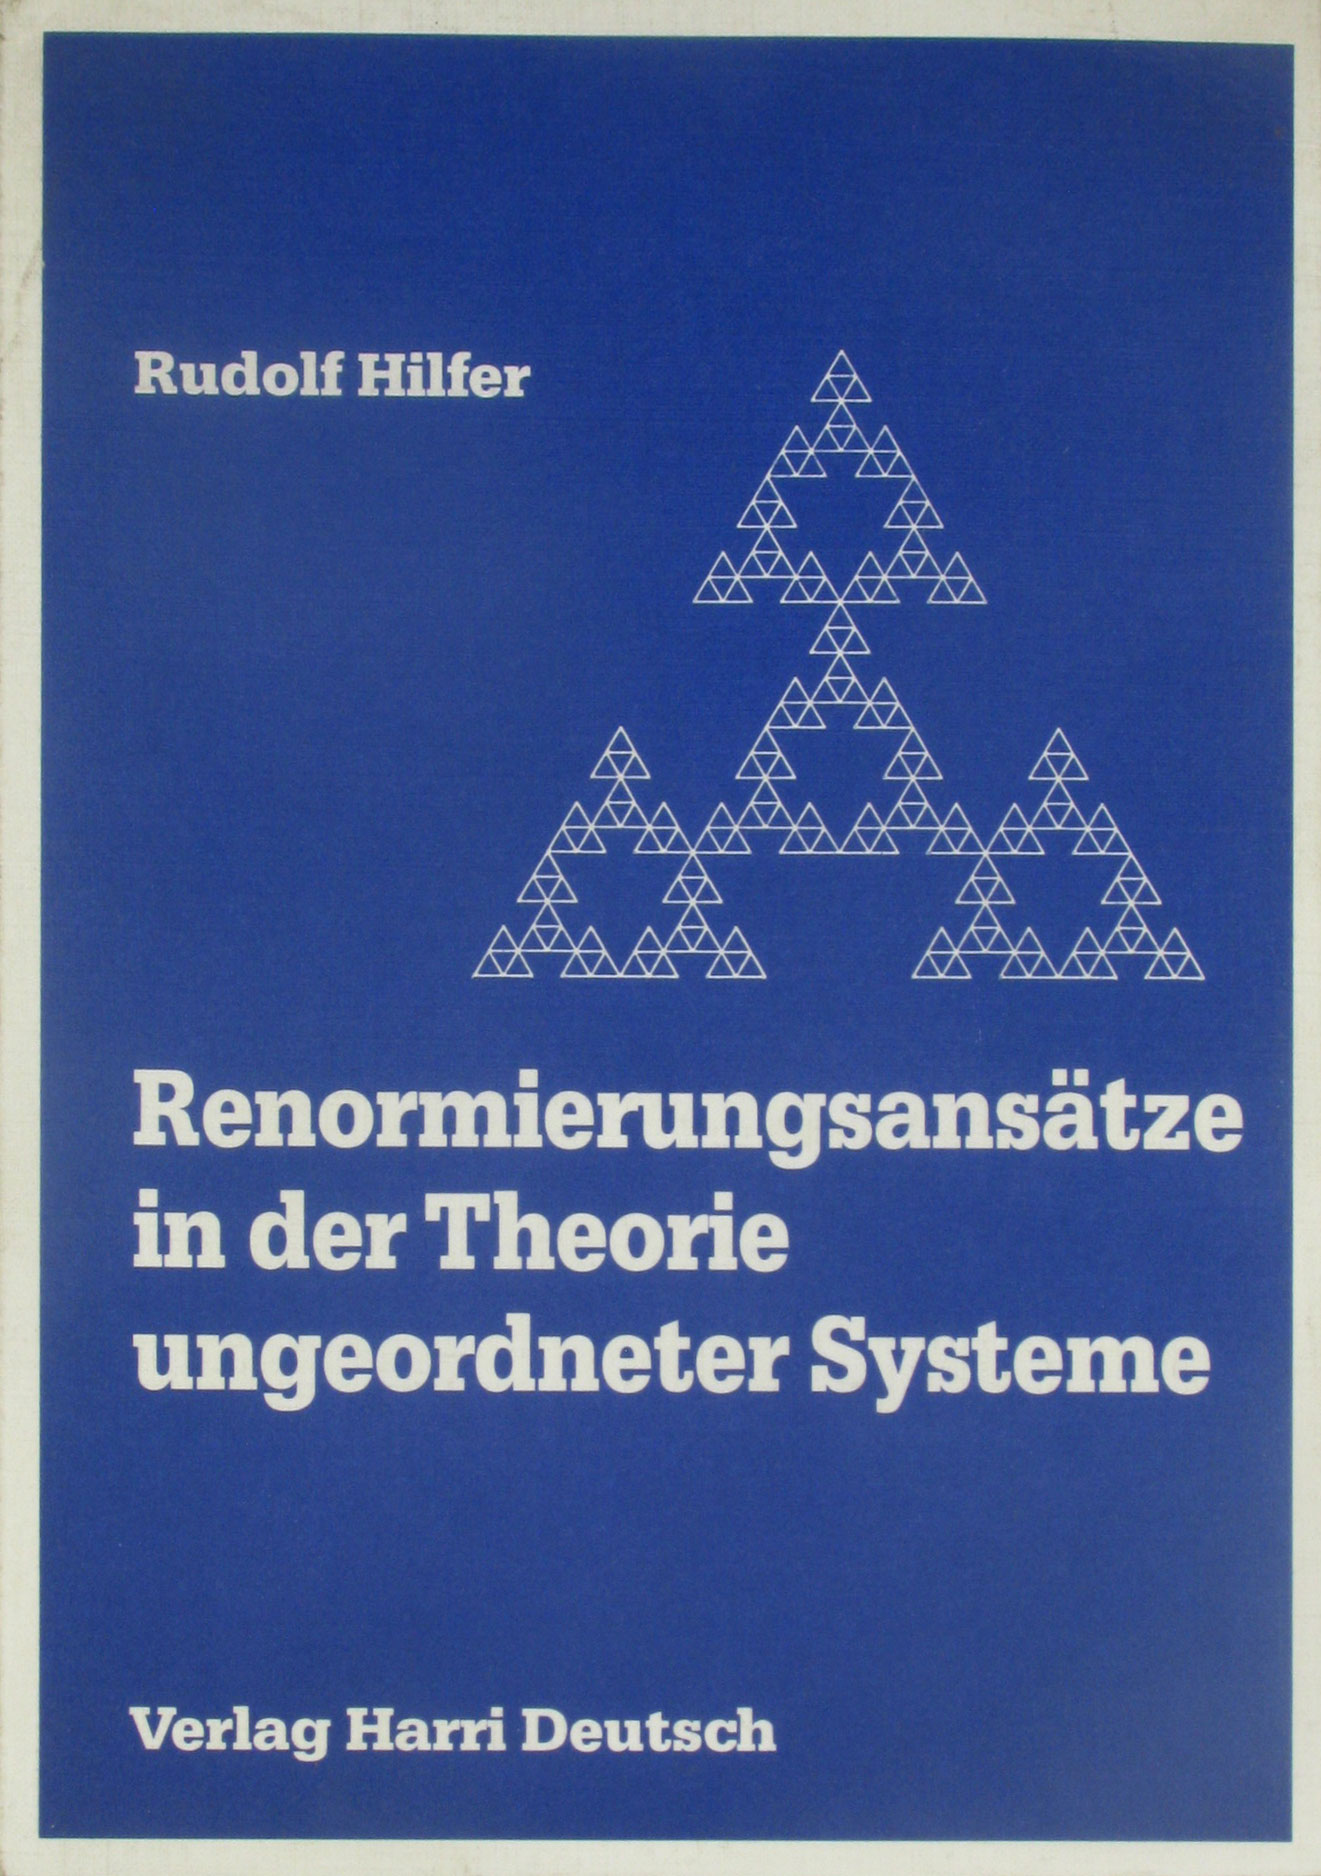 Renormierungsansätze in der Theorie untergeordneter Systeme. Fraktale Modelle und ihre Anwendung.  1. Auflage - Hilfer, Rudolf